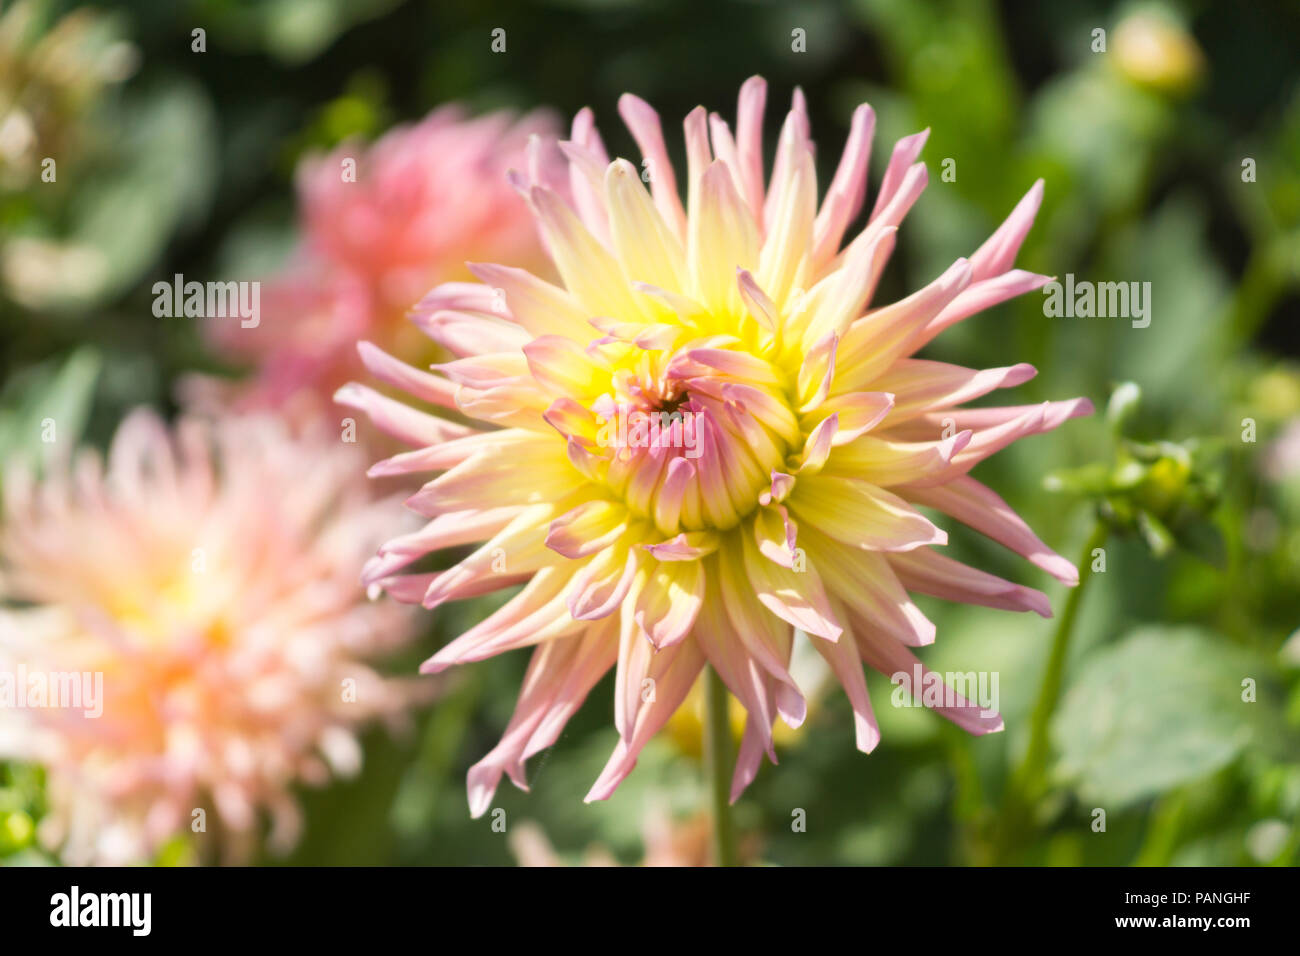 Un hermoso ejemplo de un Alfred Grille Dahlia (Cactus Dahlia - familia Asteraceae) con dos tonos de rosa y amarillo 'doble flor', Baja Austria Foto de stock